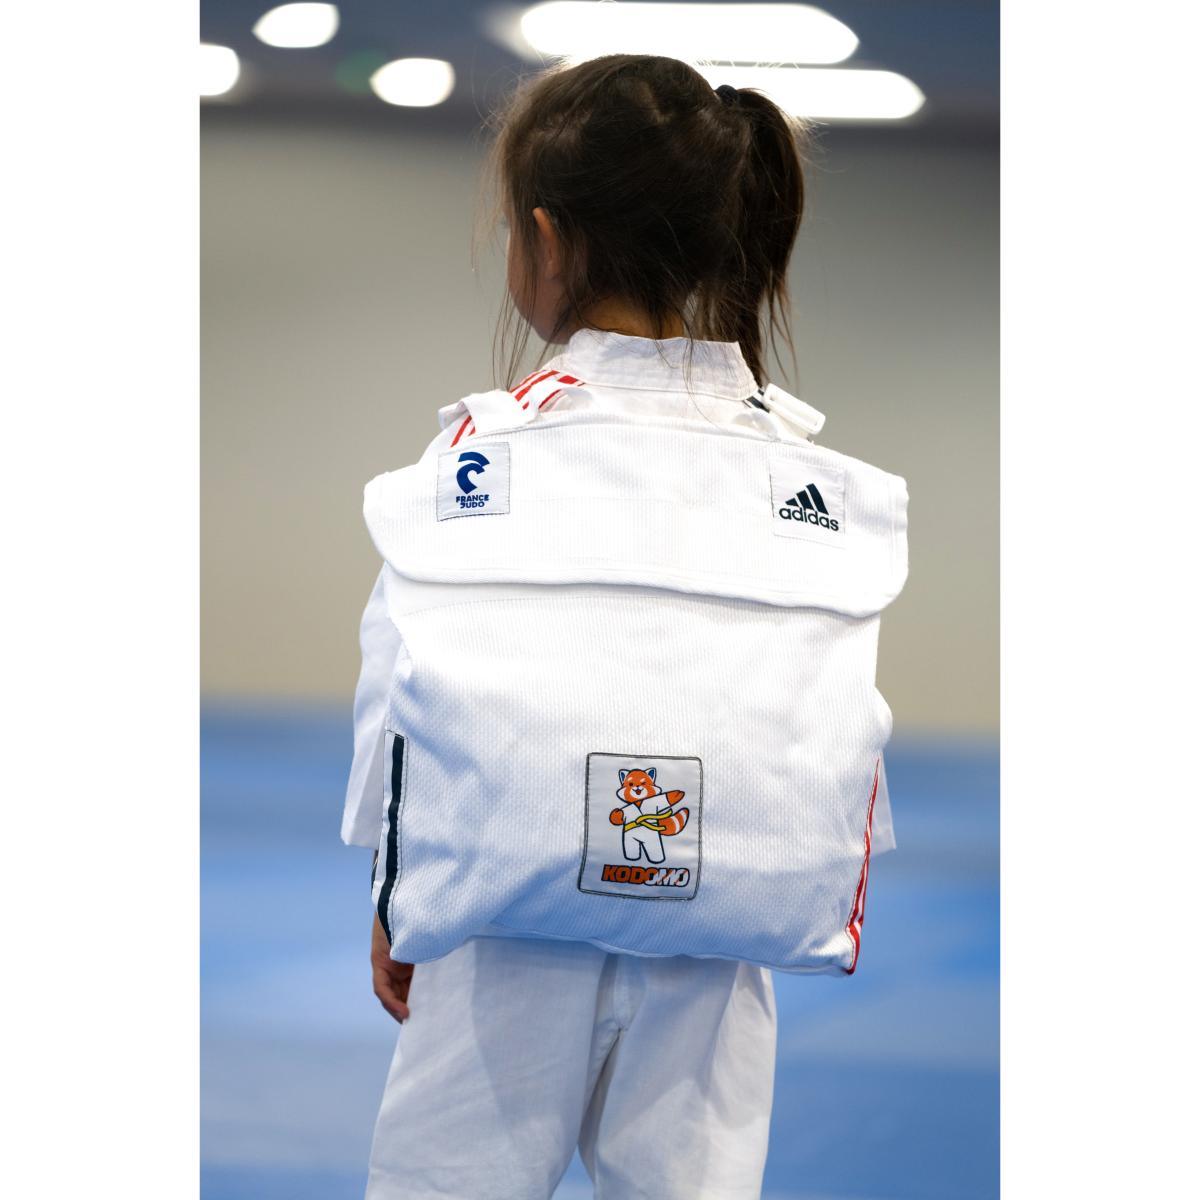 Sac à dos Adidas enfant - Kodomo France Judo - Boutique des Arts Martiaux et Sports de Combat